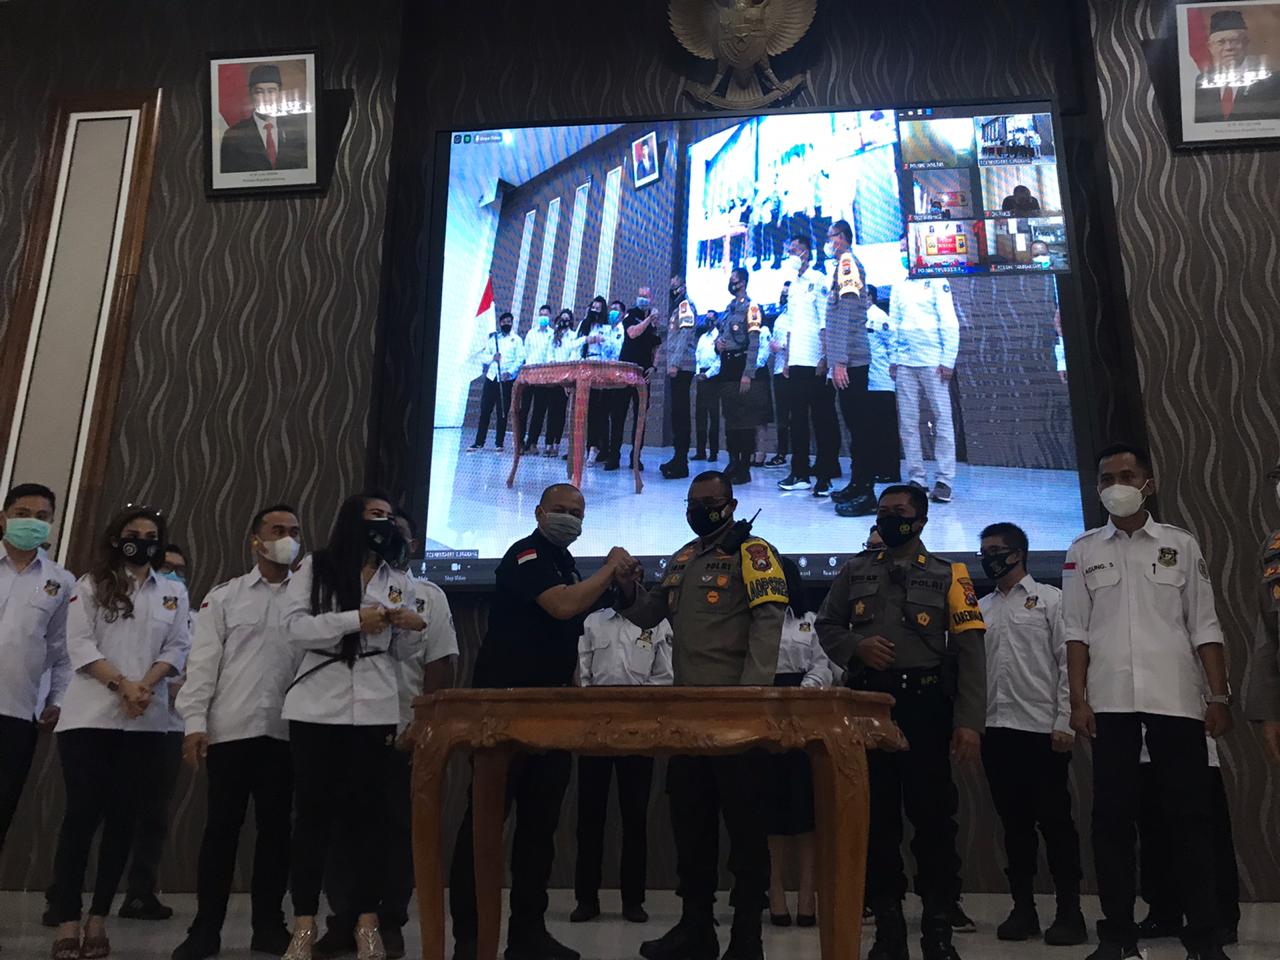 Pengukuhan DPC Sahabat Polisi Indonesia Surabaya oleh Ketum Fonda Tangguh, Jumat (20/11)